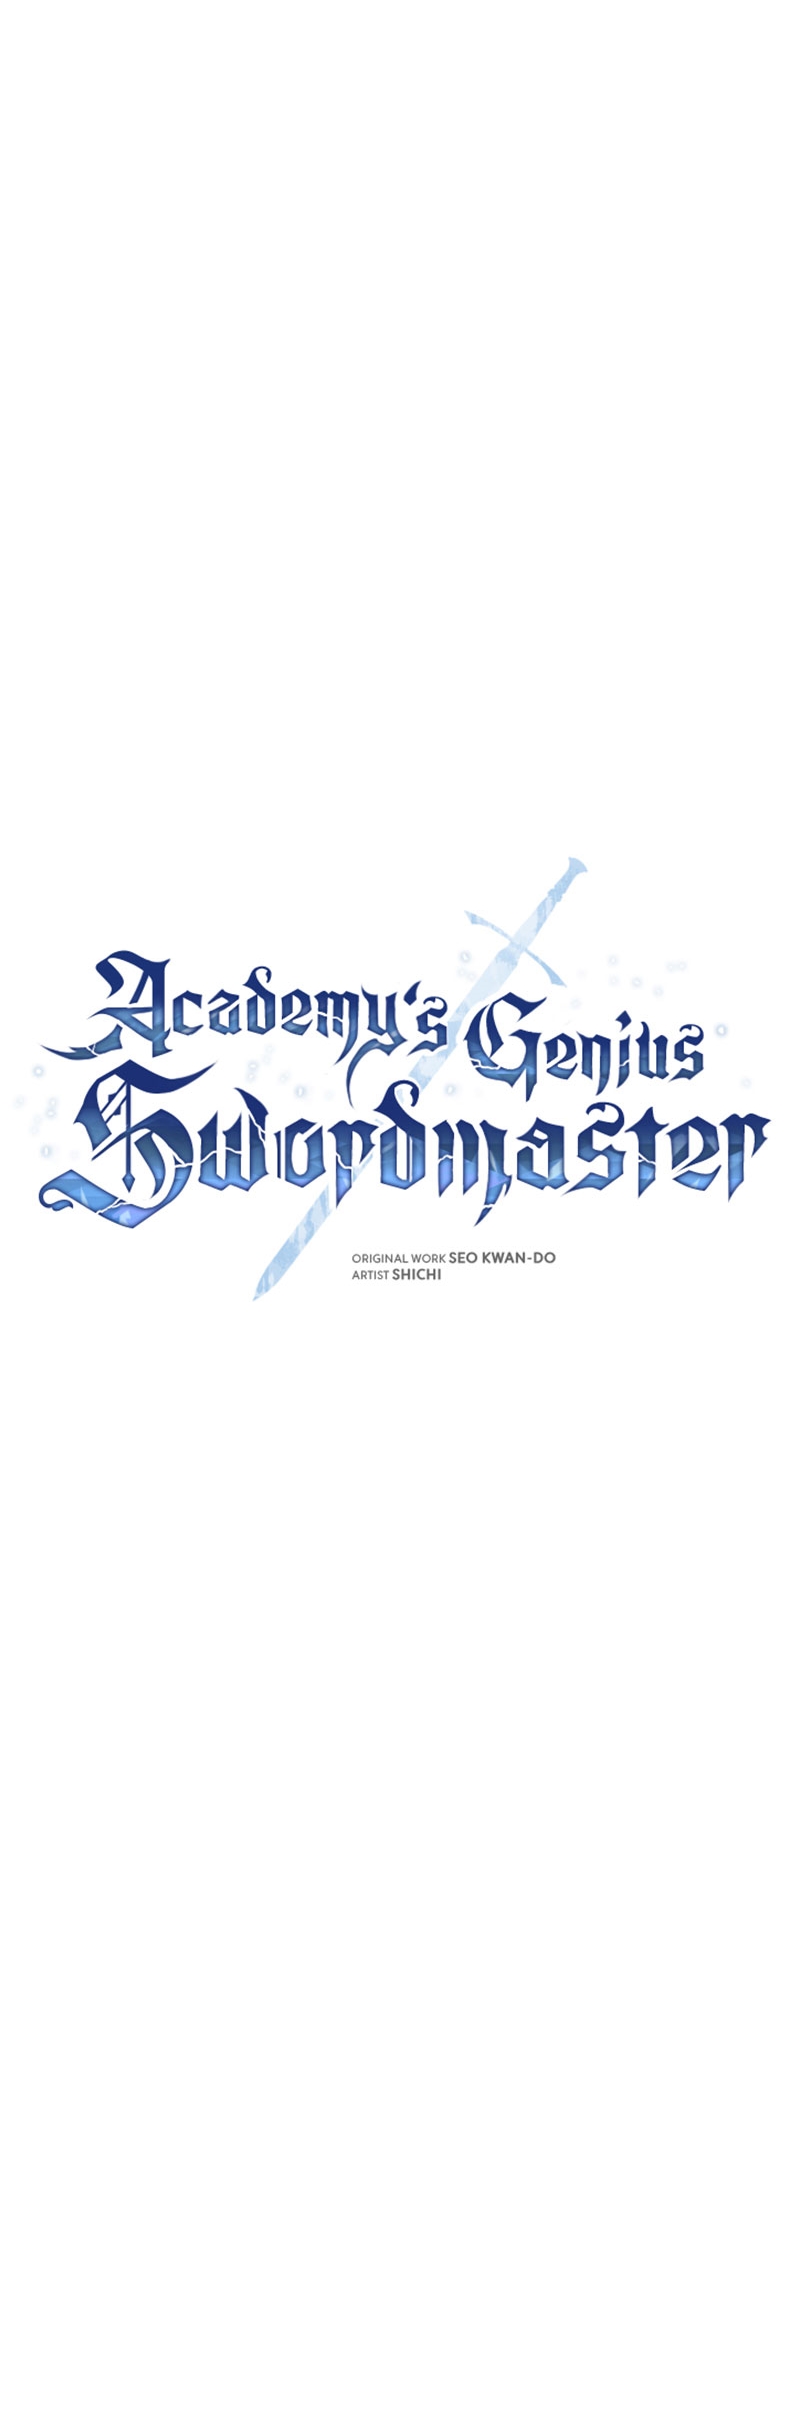 academys genius swordmaster 17.20